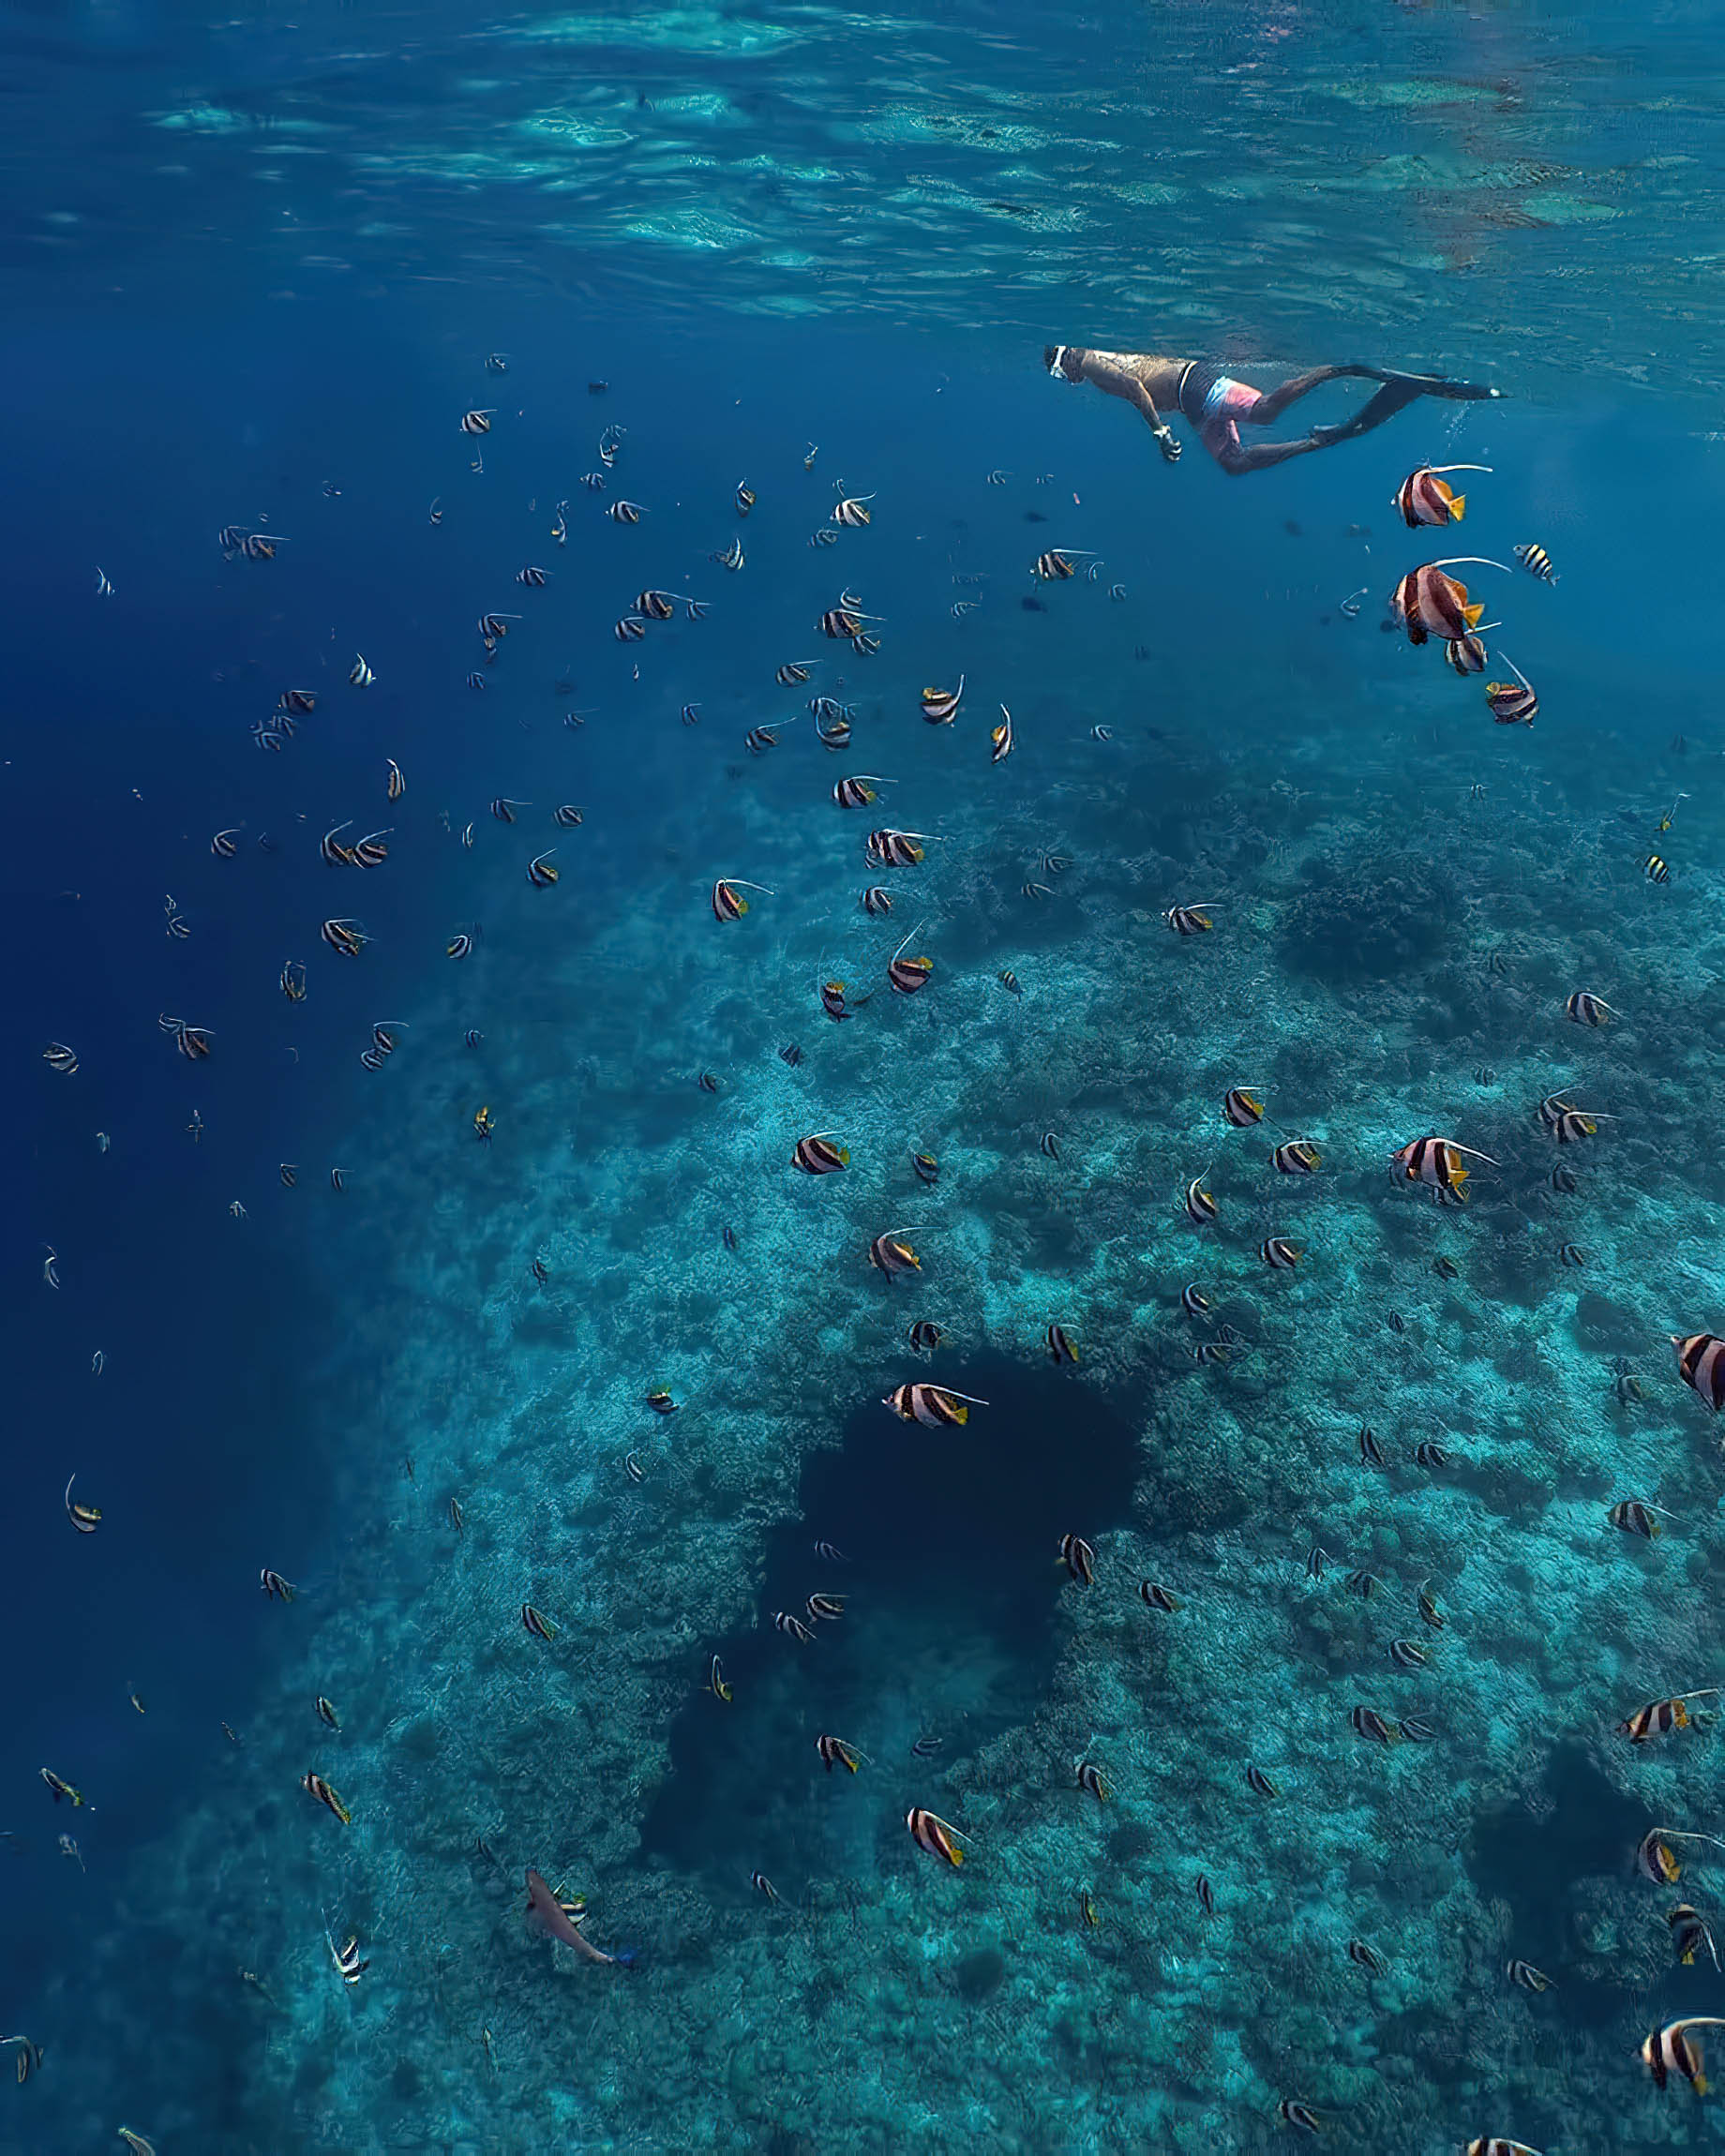 Amilla Fushi Resort and Residences - Baa Atoll, Maldives - Ocean Watersports Snorkeling